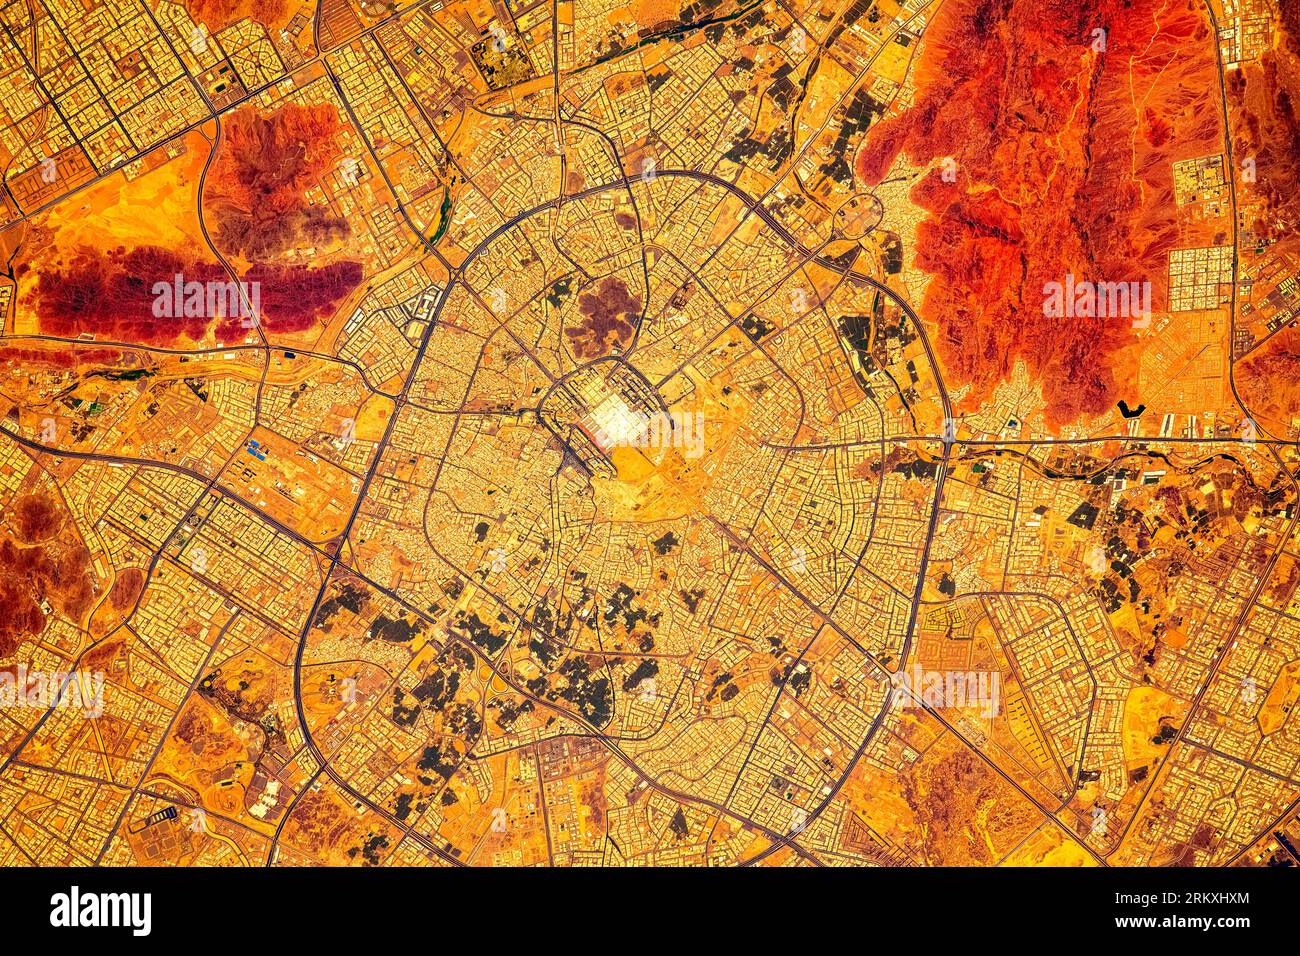 Medina City, Arabie Saoudite. Amélioration numérique d'une image par la NASA. Banque D'Images